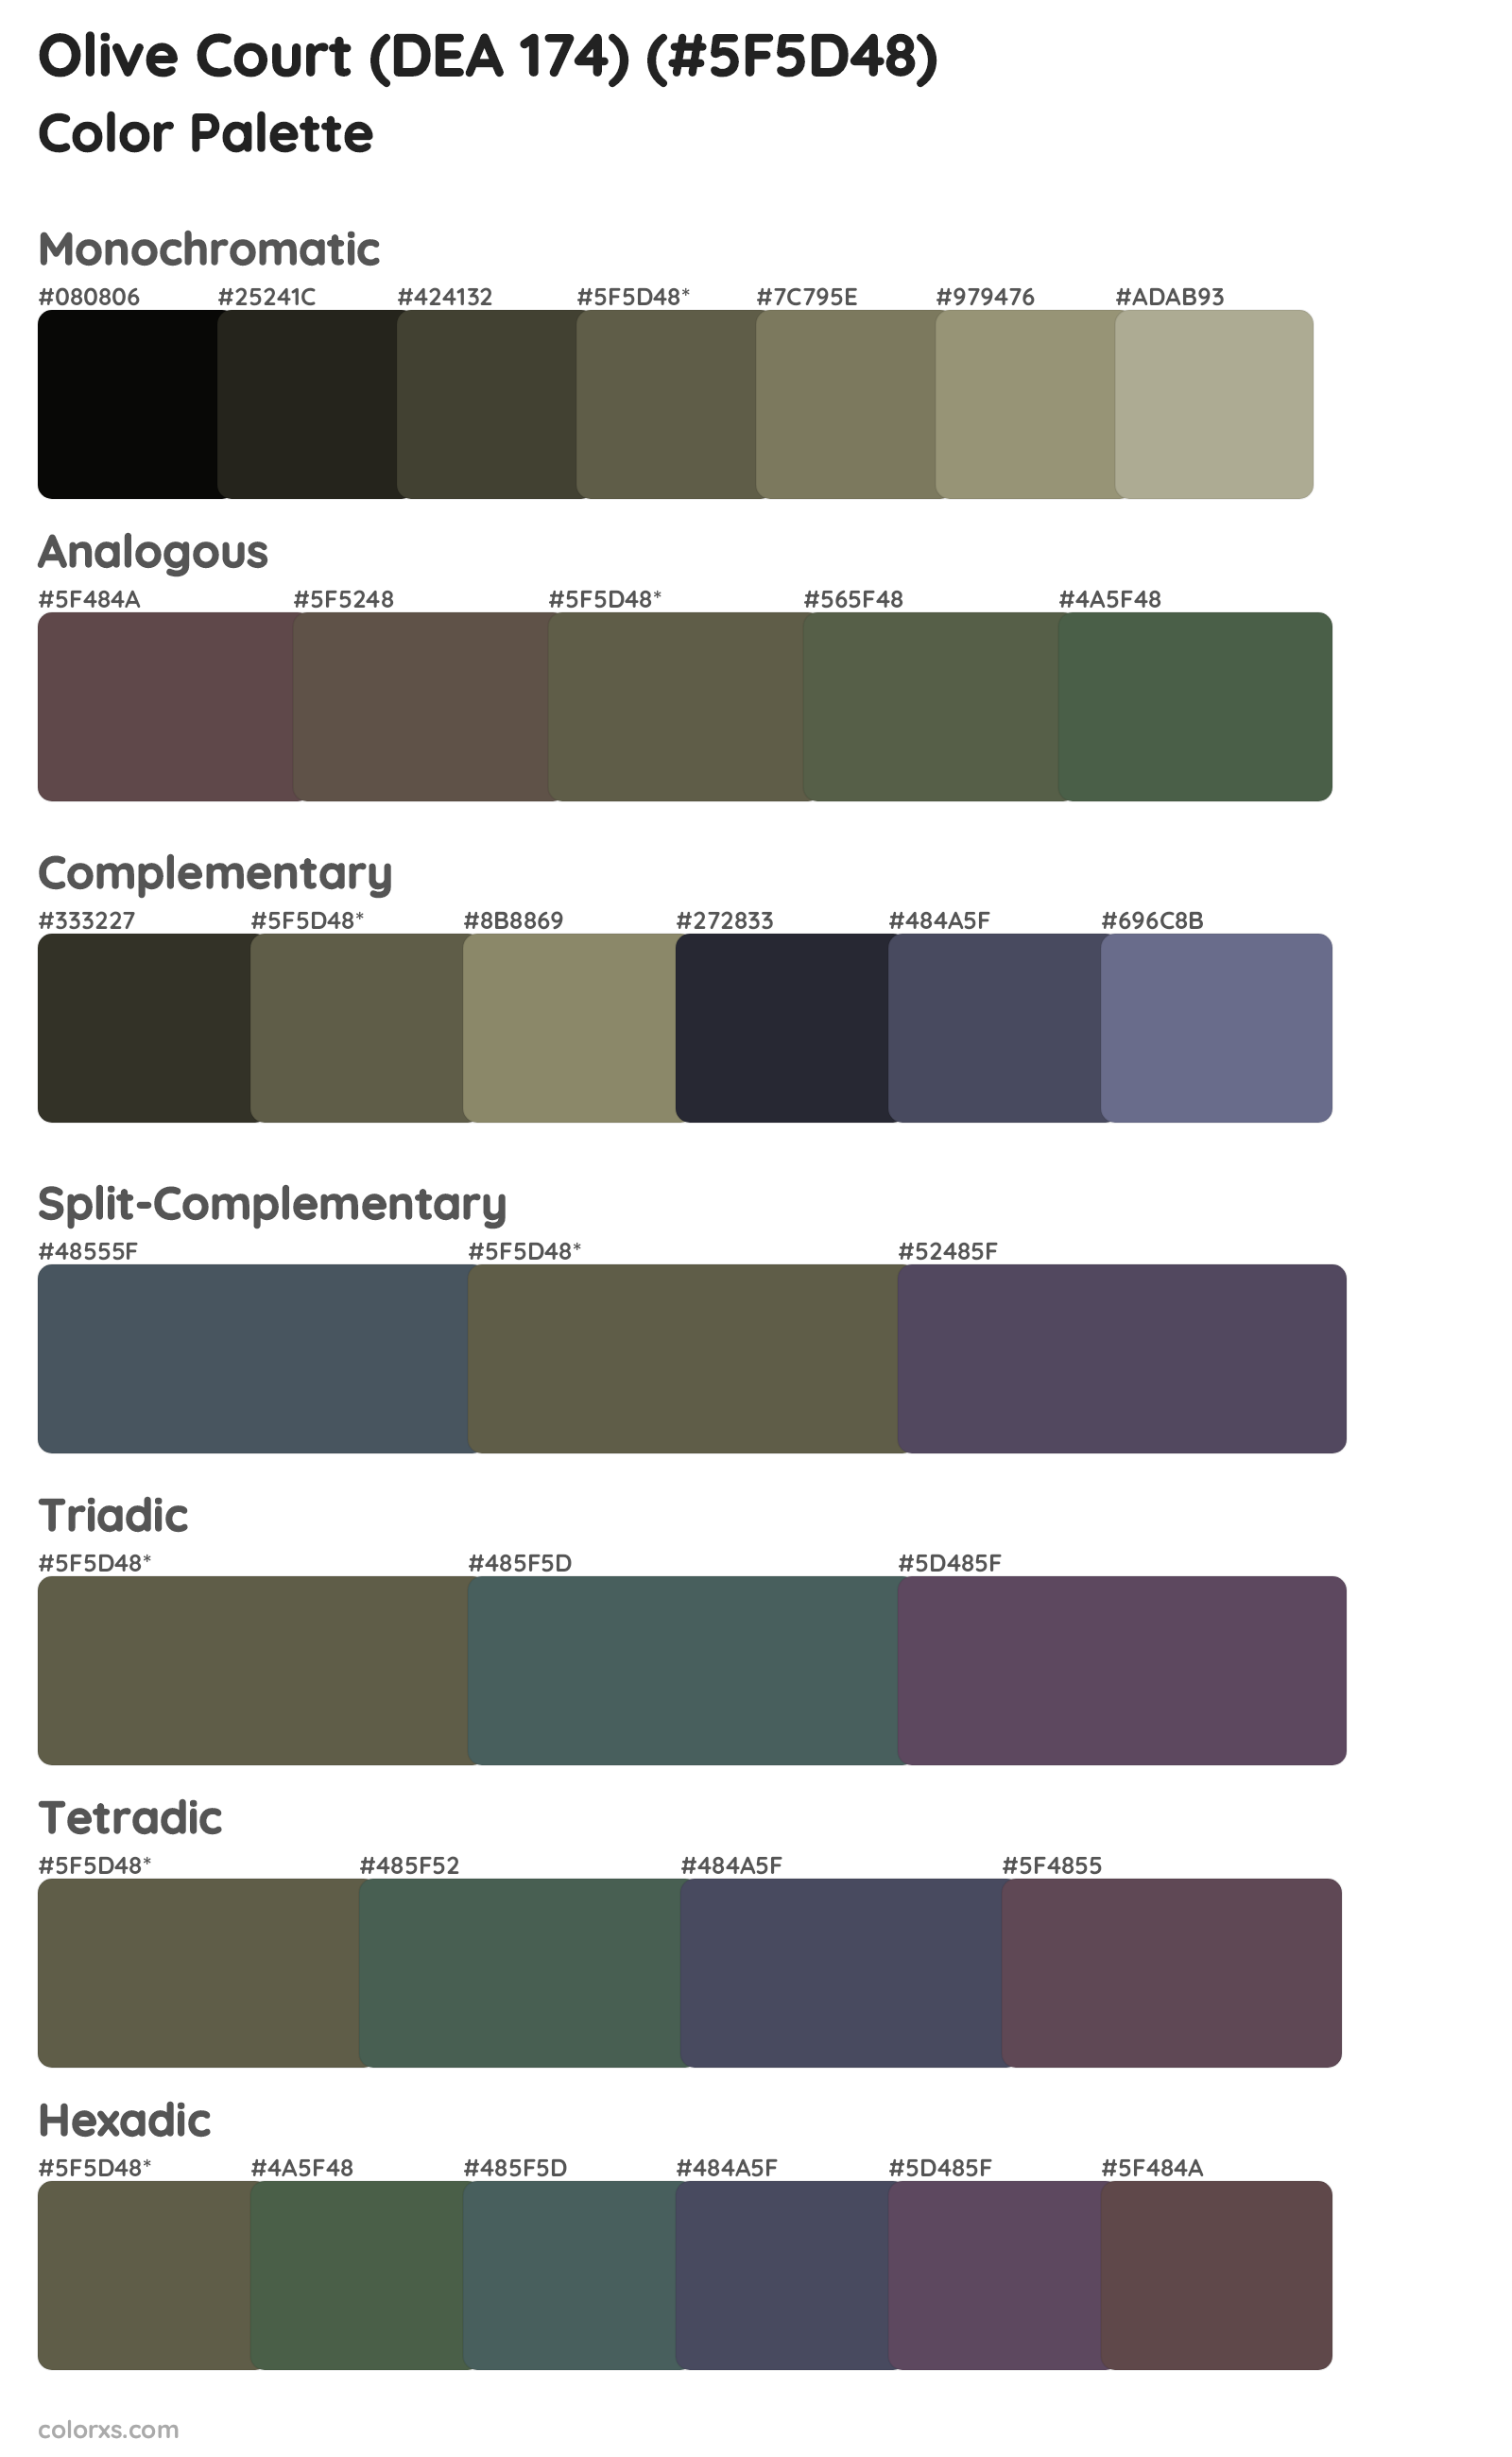 Olive Court (DEA 174) Color Scheme Palettes